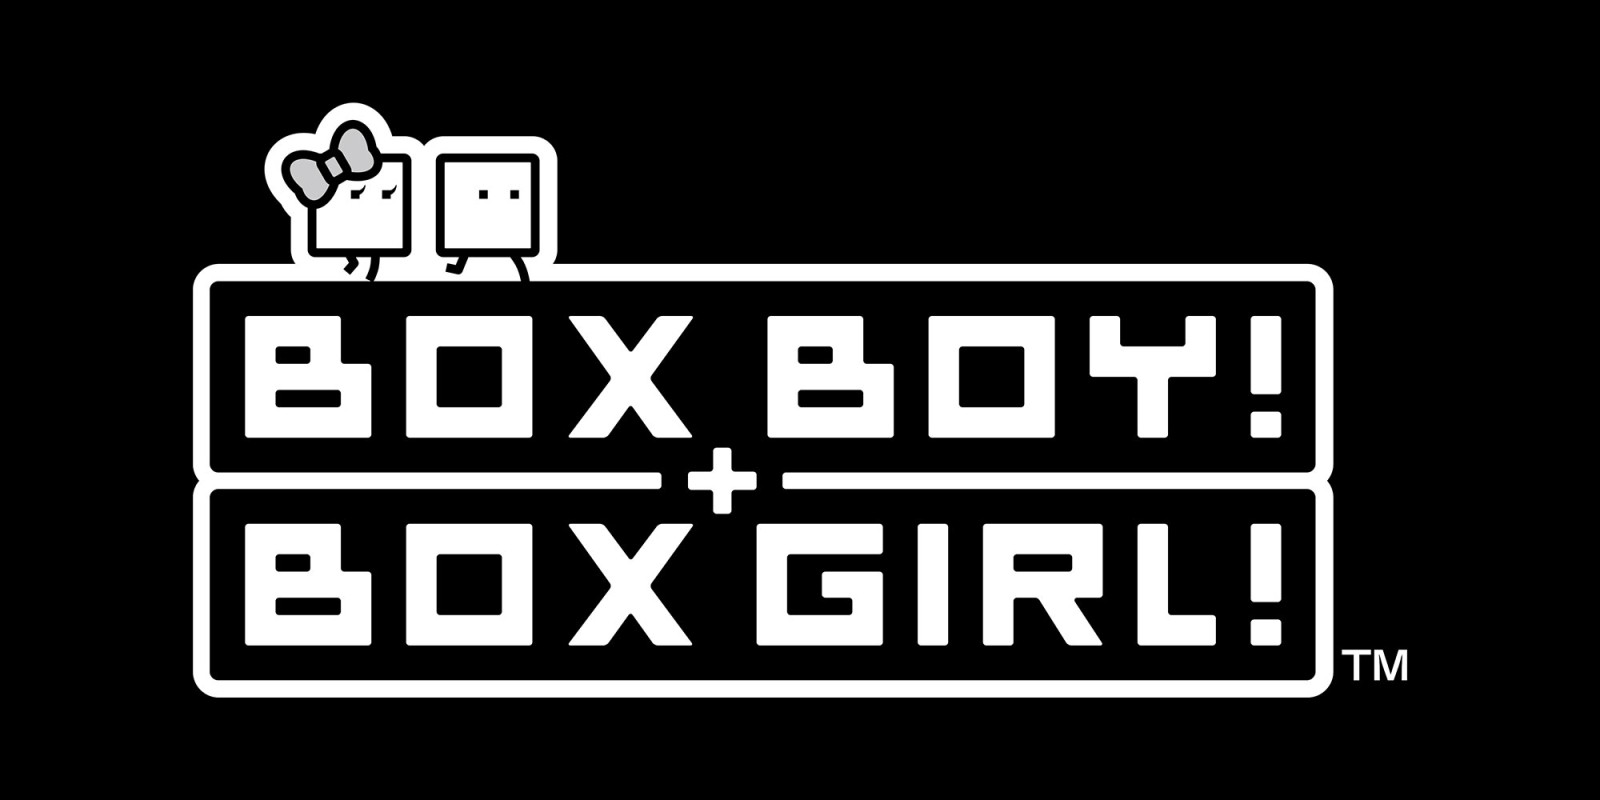 Boxboy! + Boxgirl! tienen Demo disponible en la eShop